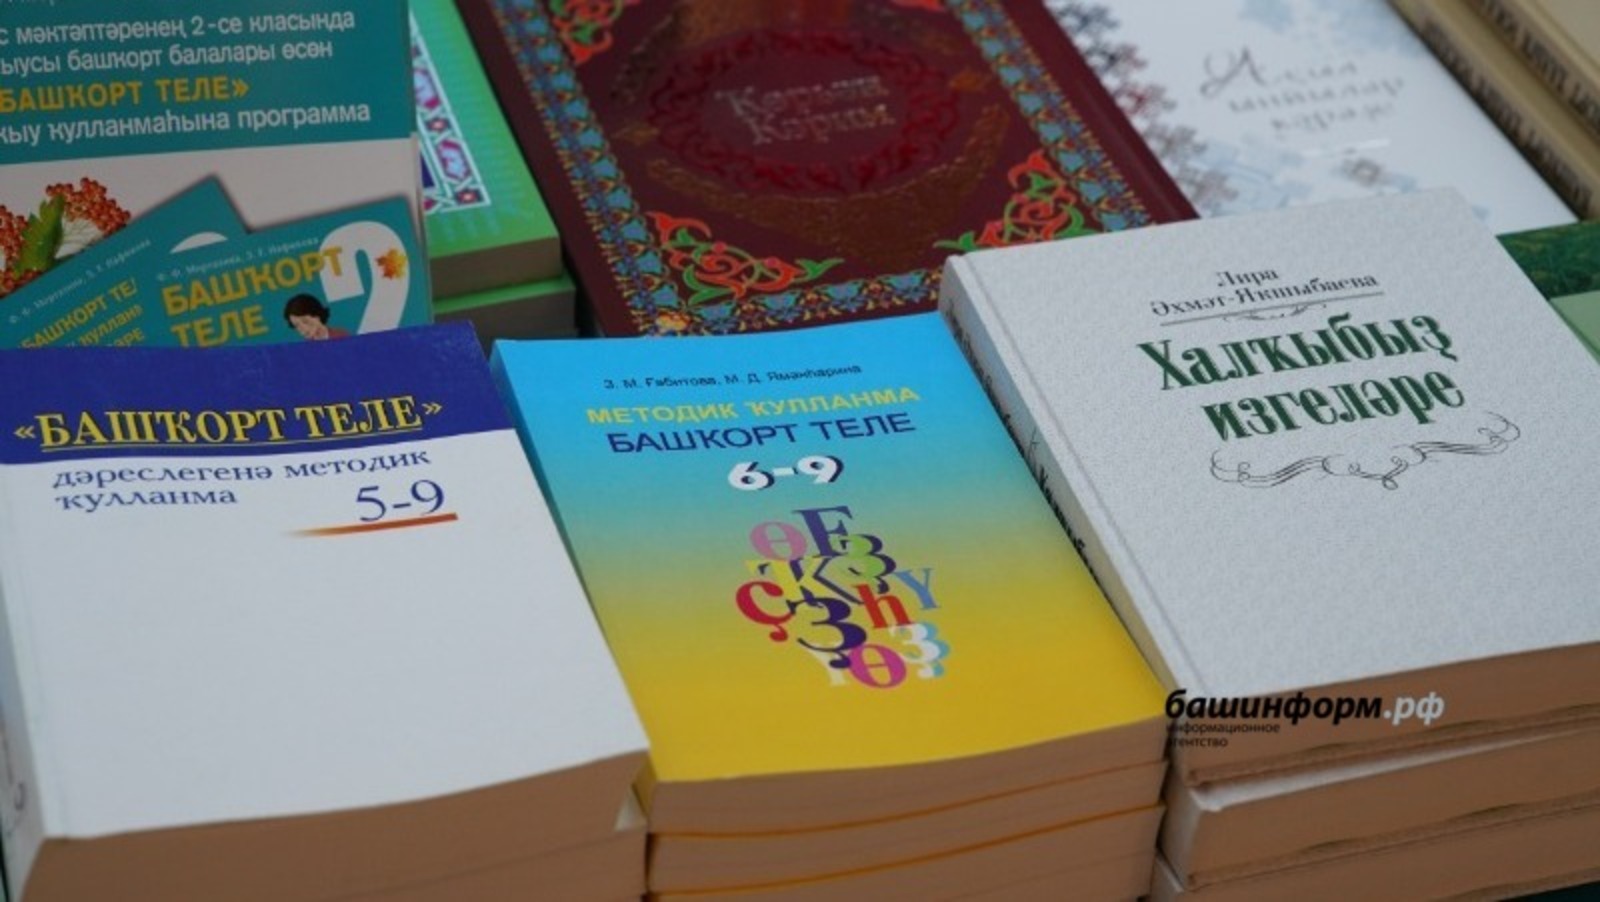 В Башкирии пройдет Неделя башкирского языка